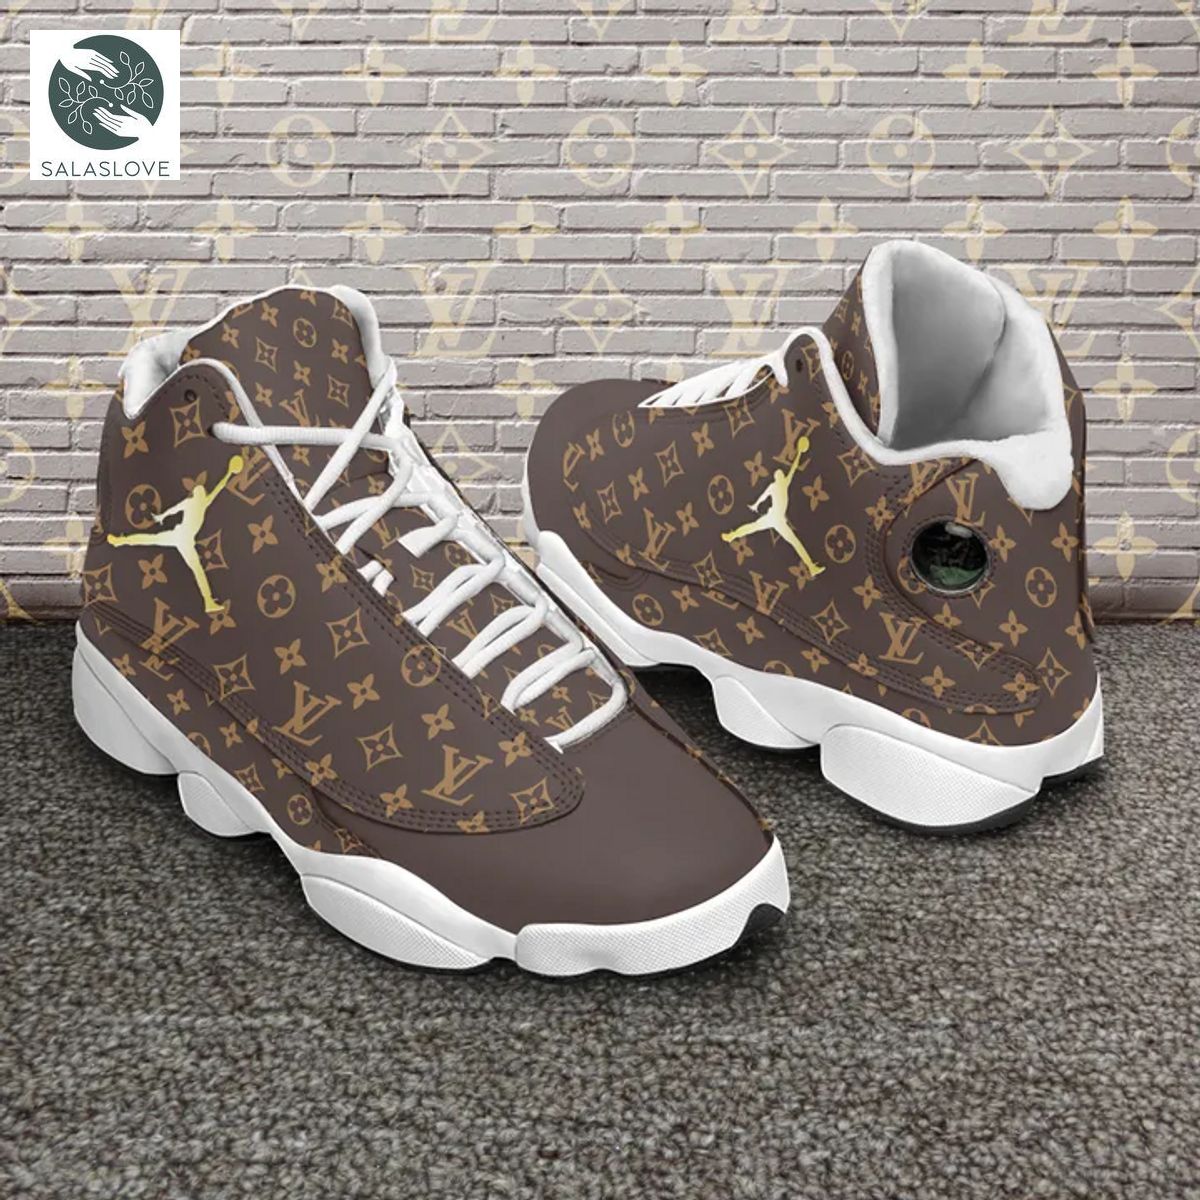 Brown Louis Vuitton air jordan 13 custom shoes sneakers